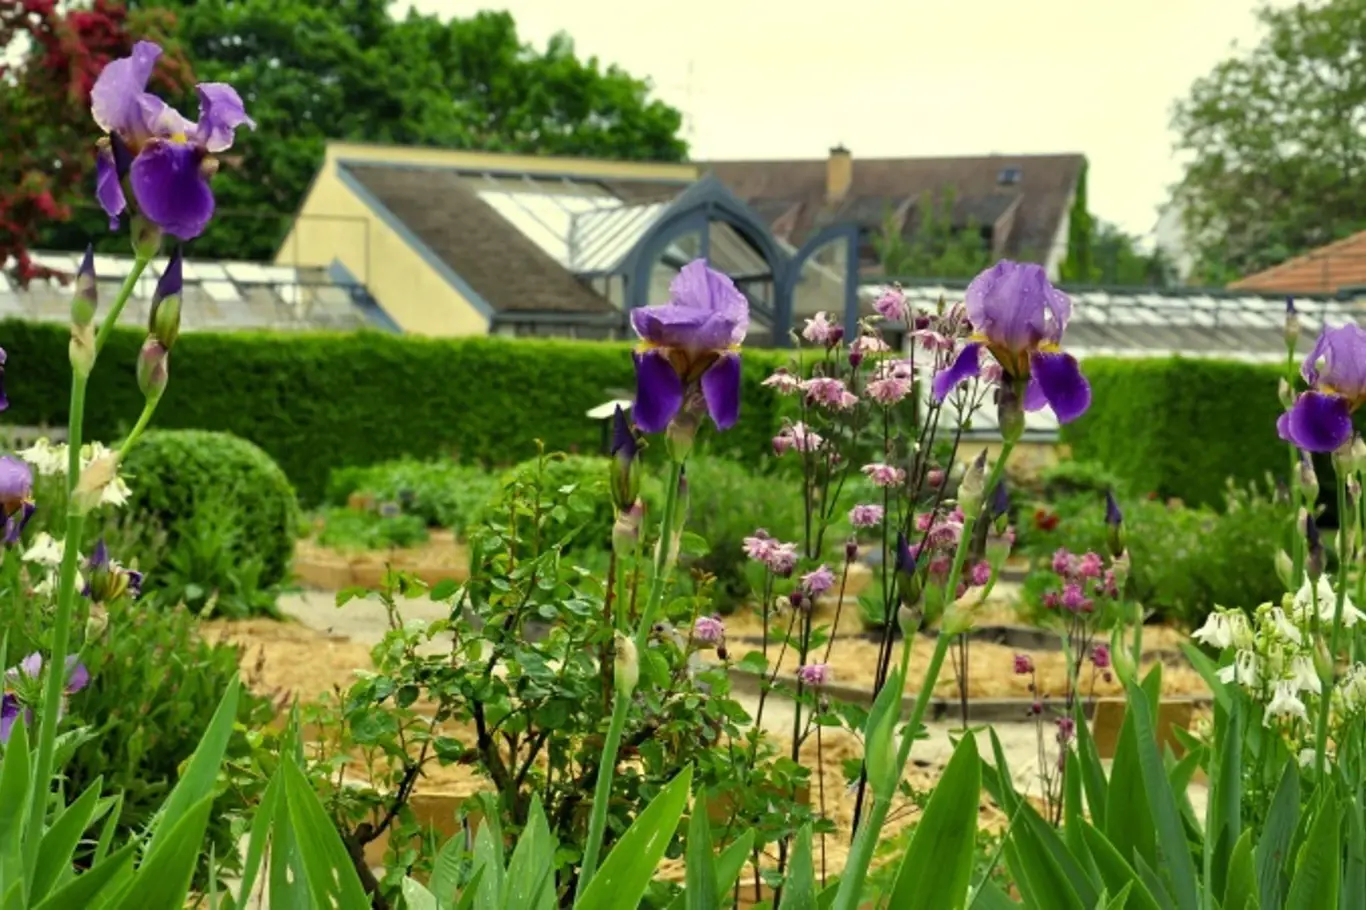 Bylinková zahrada Lu & Tiree Chmelar se nachází ve Valticích, v místech bývalého zámeckého zahradnictví.